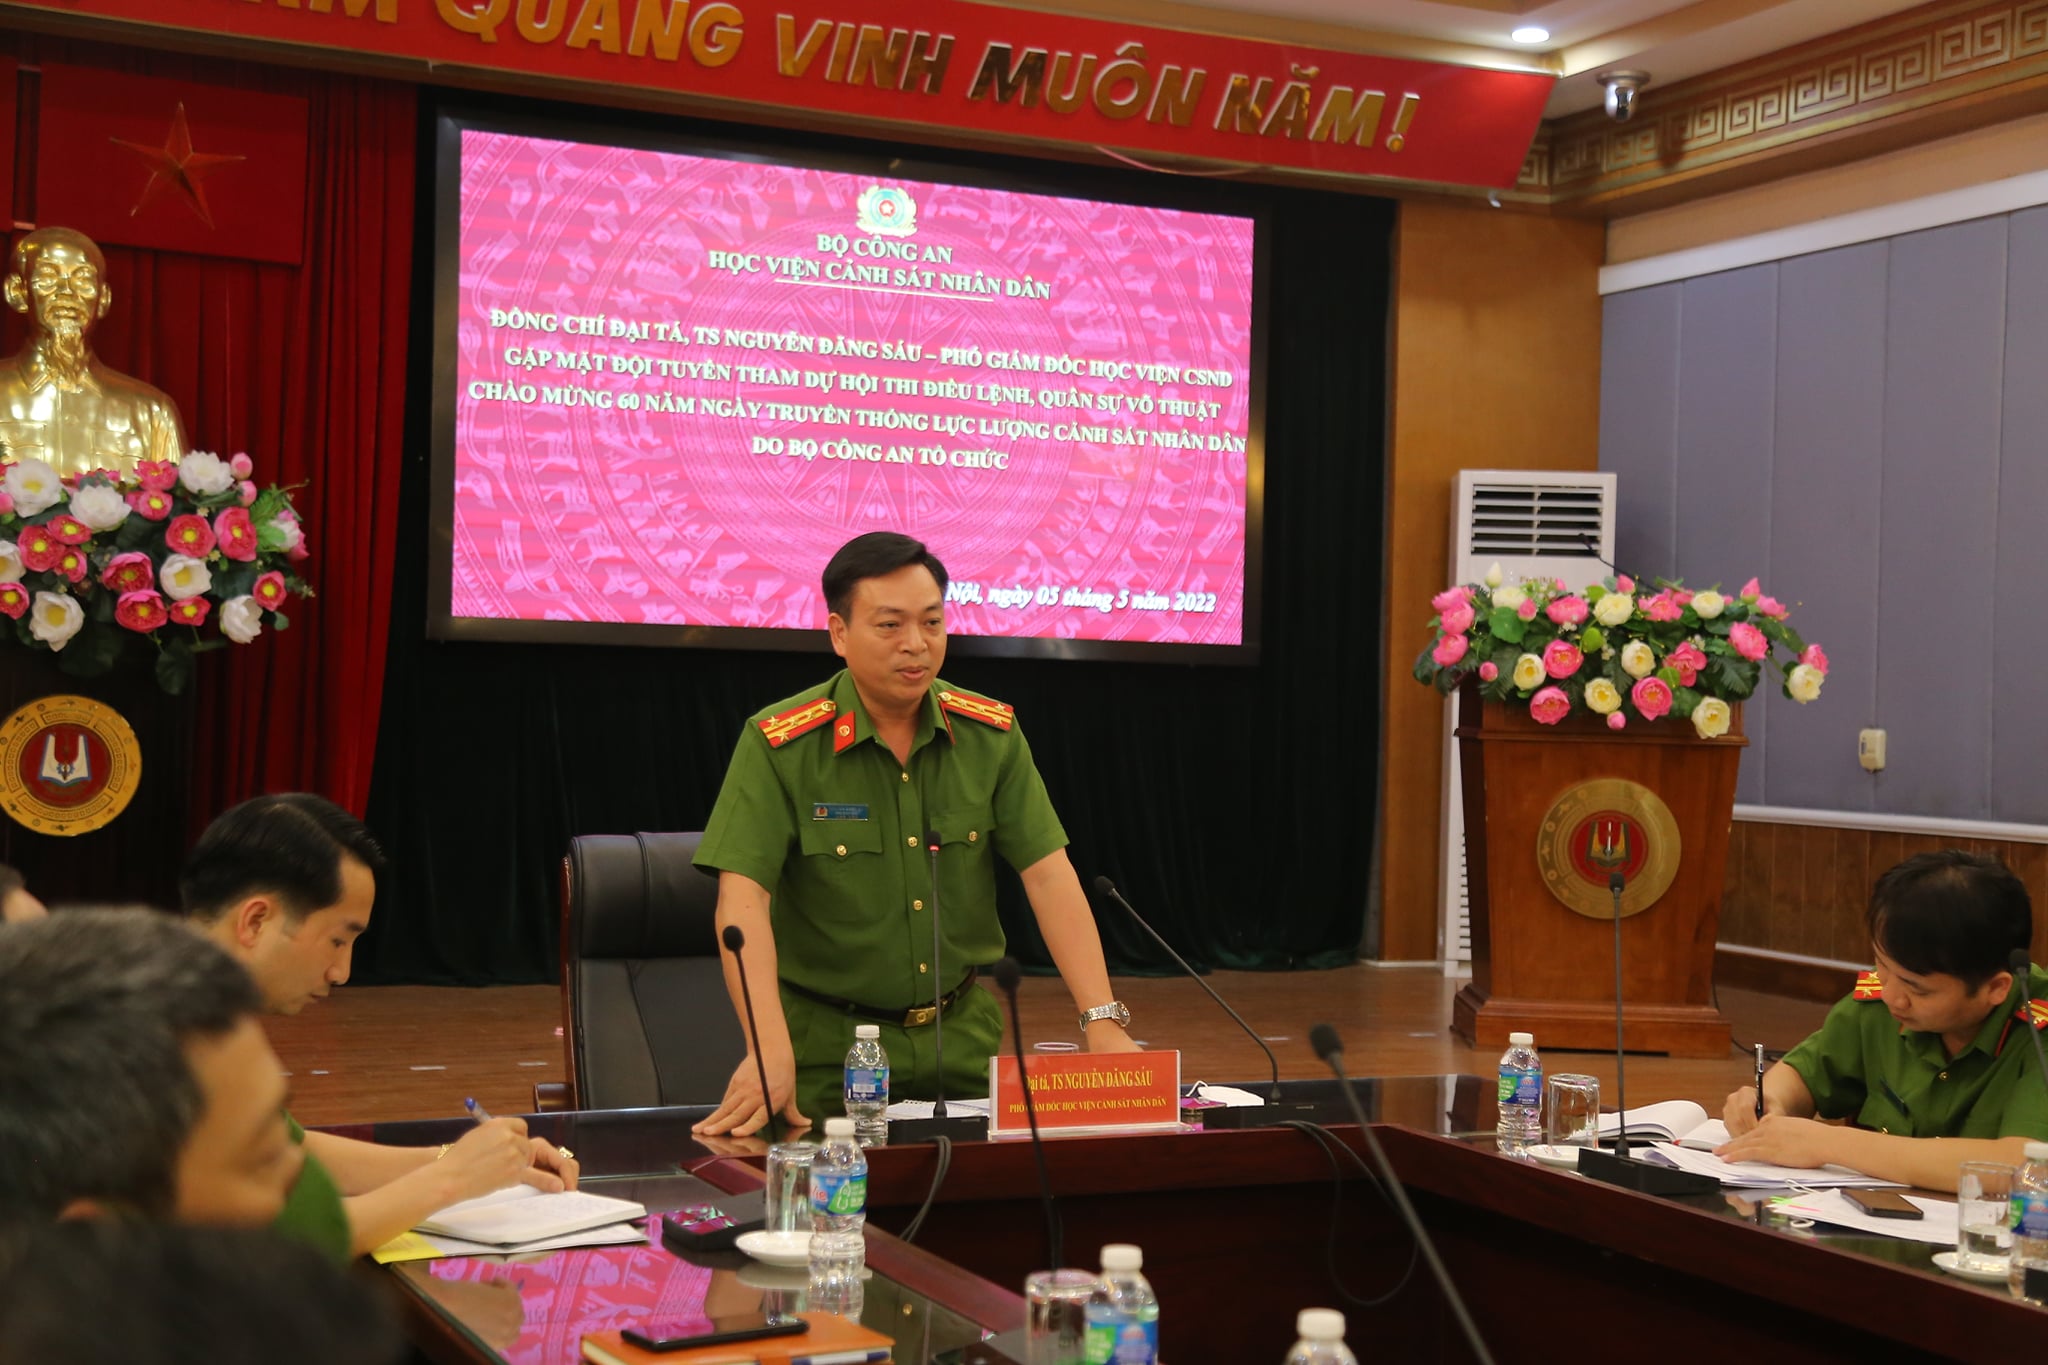 Đại tá Nguyễn Đăng Sáu - Phó Giám đốc Học viện phát biểu tại chương trình